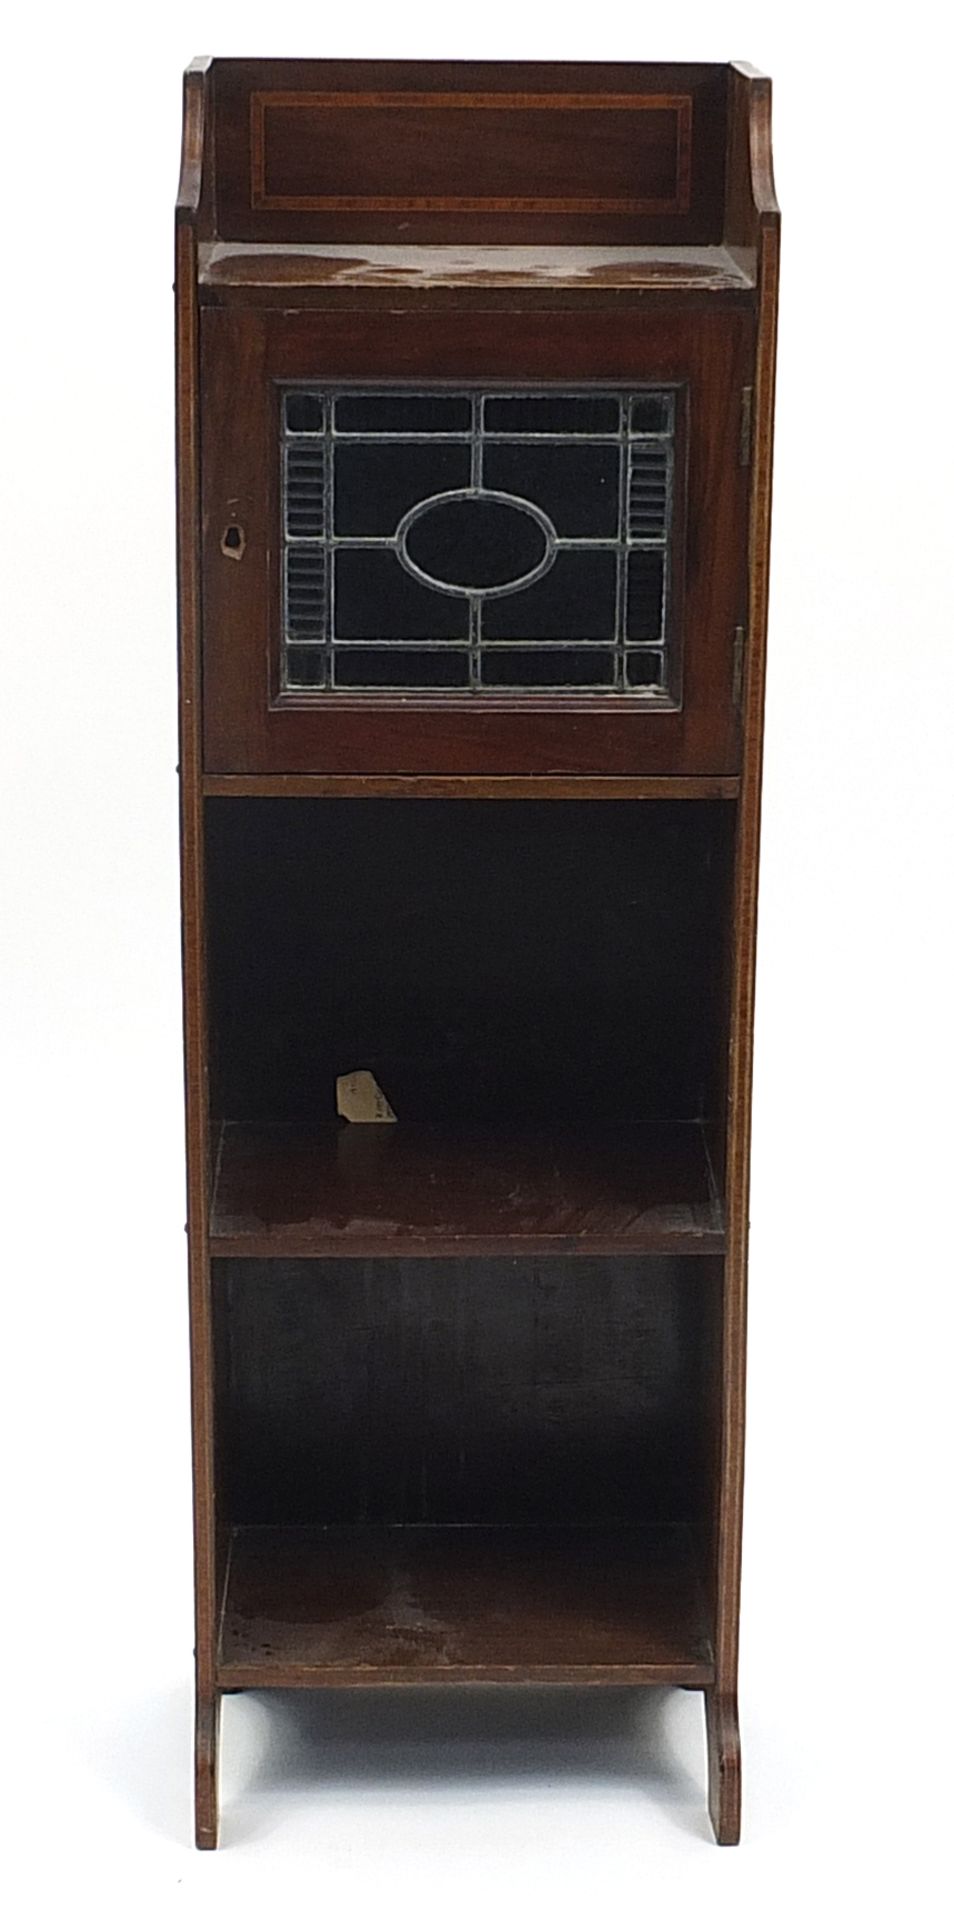 Inlaid walnut bookcase with leaded glazed door, 97cm H x 30cm W x 19cm D